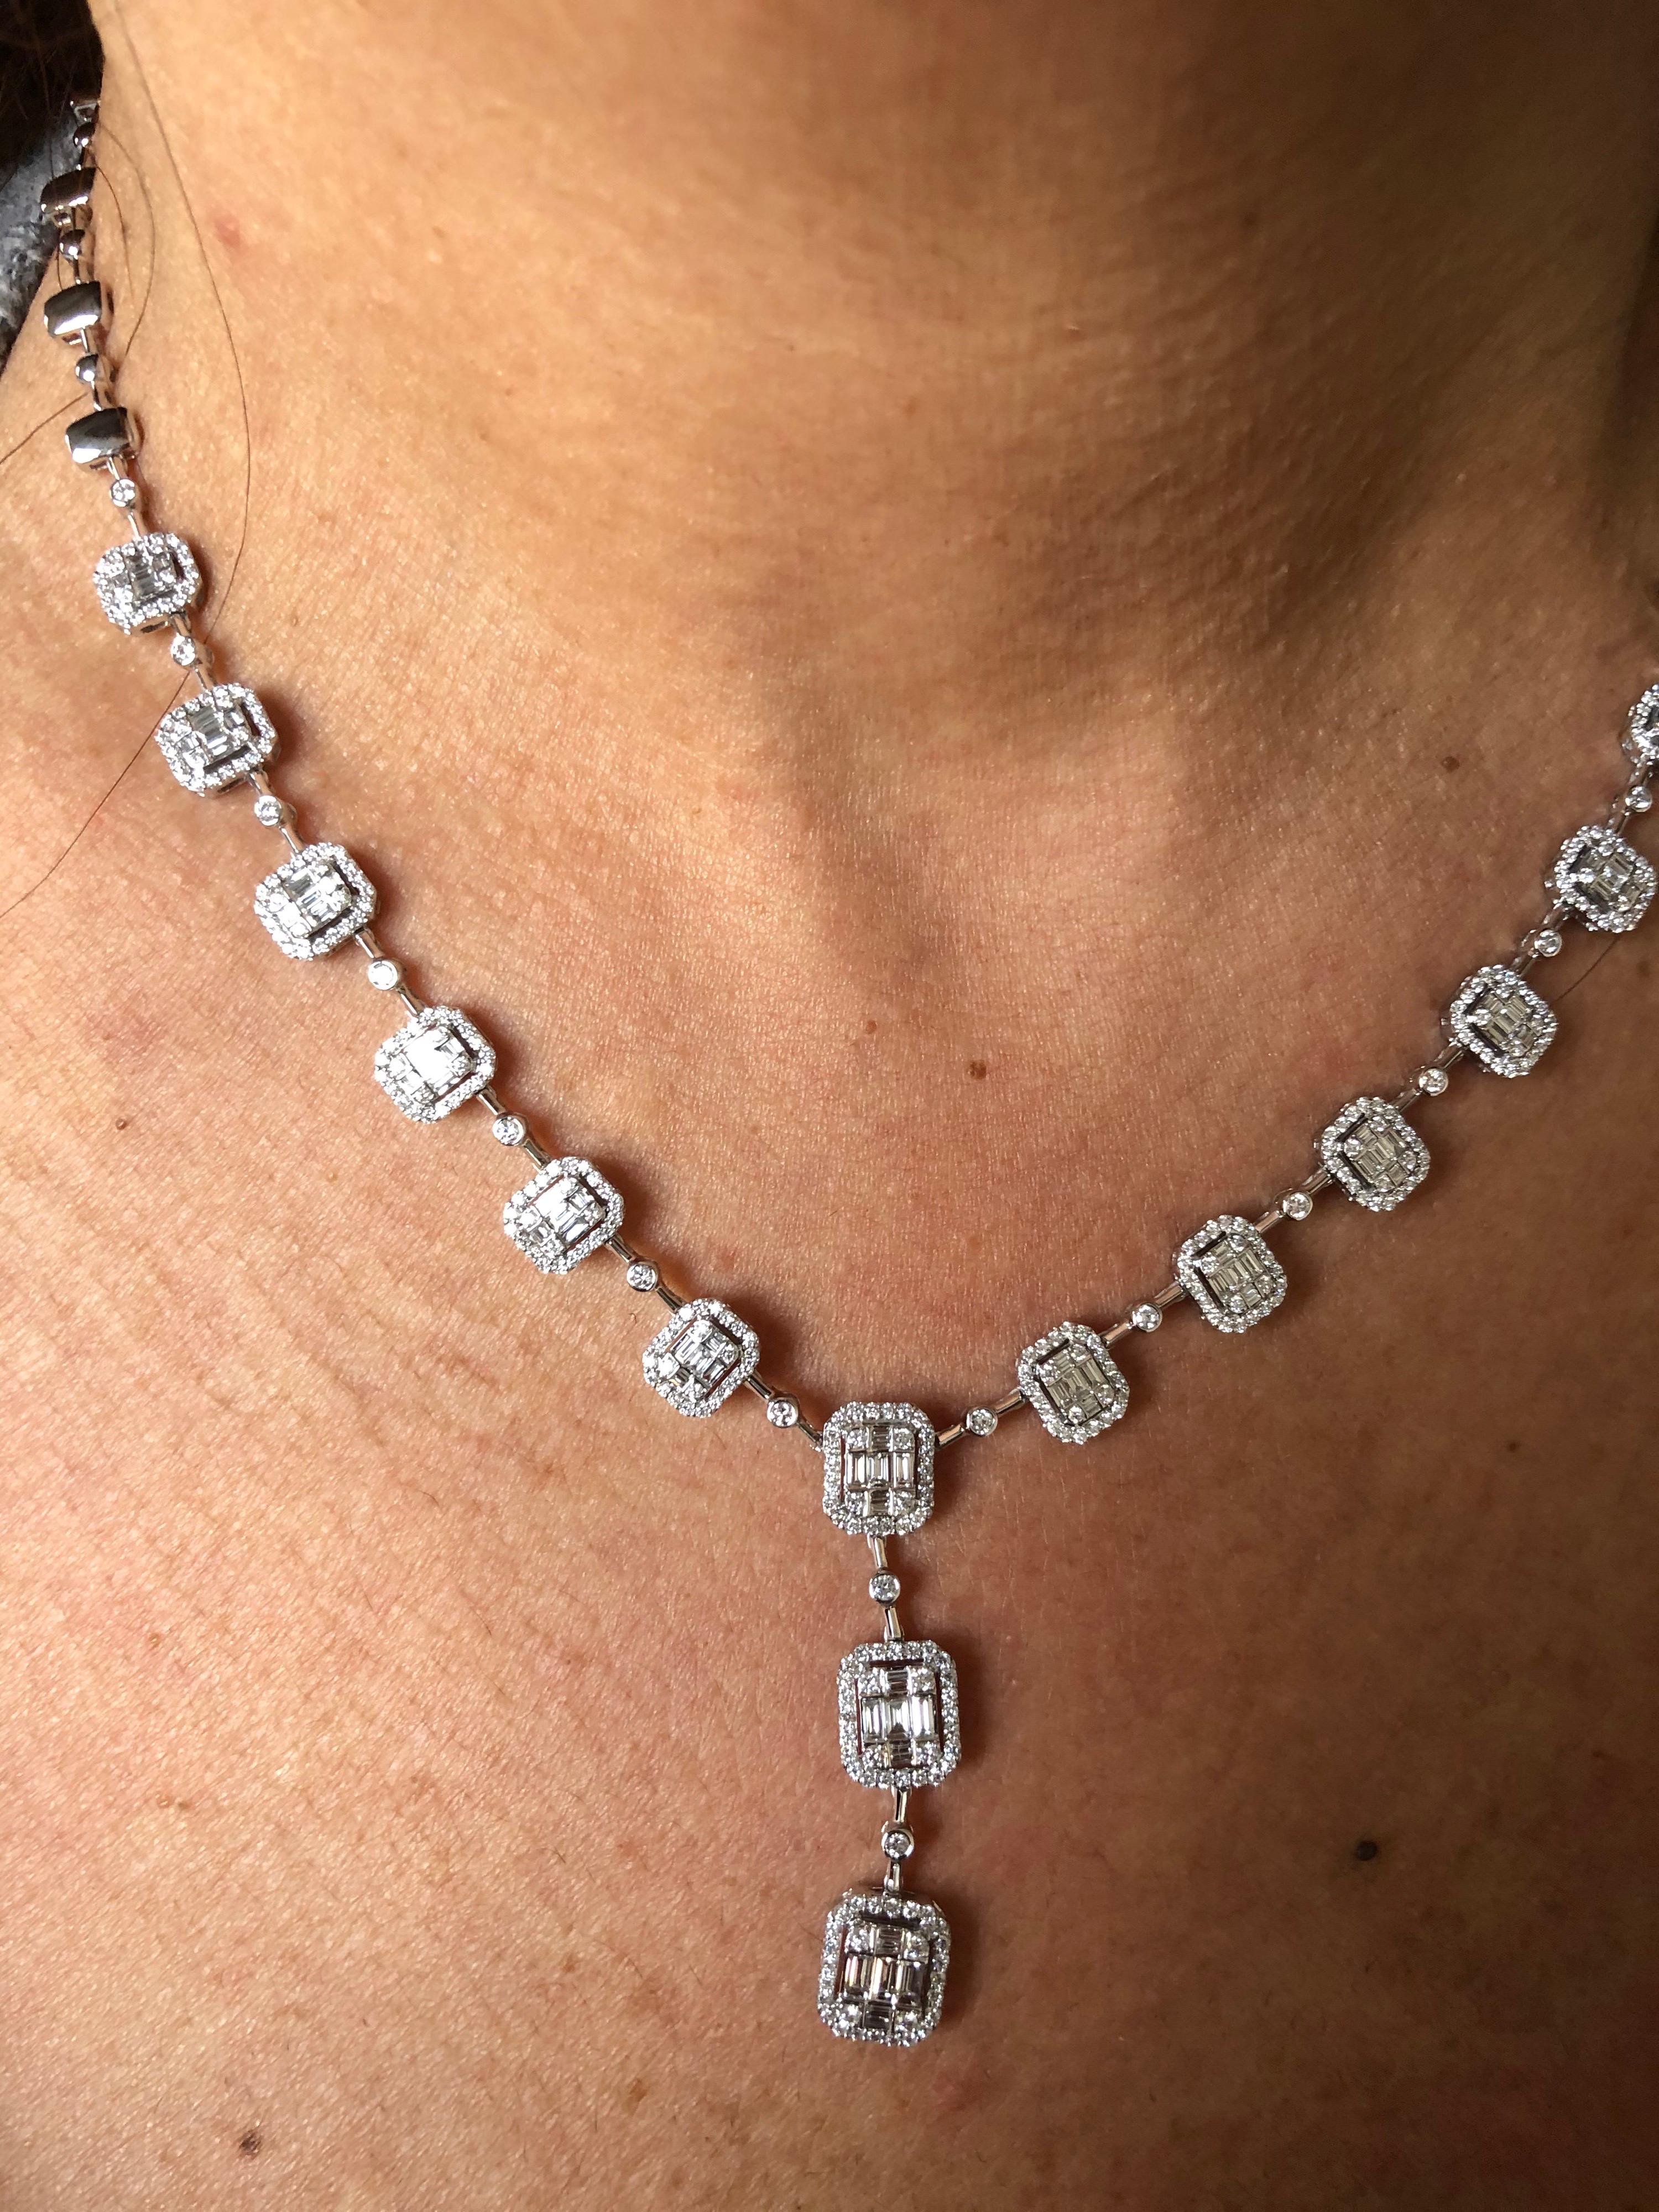 Diamant-Halskette aus 18 Karat Weißgold mit einem Cluster aus Baguette- und runden Diamanten, die die Illusion eines einzelnen Smaragds erwecken. Das Gesamtkaratgewicht der Halskette beträgt 6,57 Karat. Die Halskette ist 17 Zoll lang. Die Farbe der